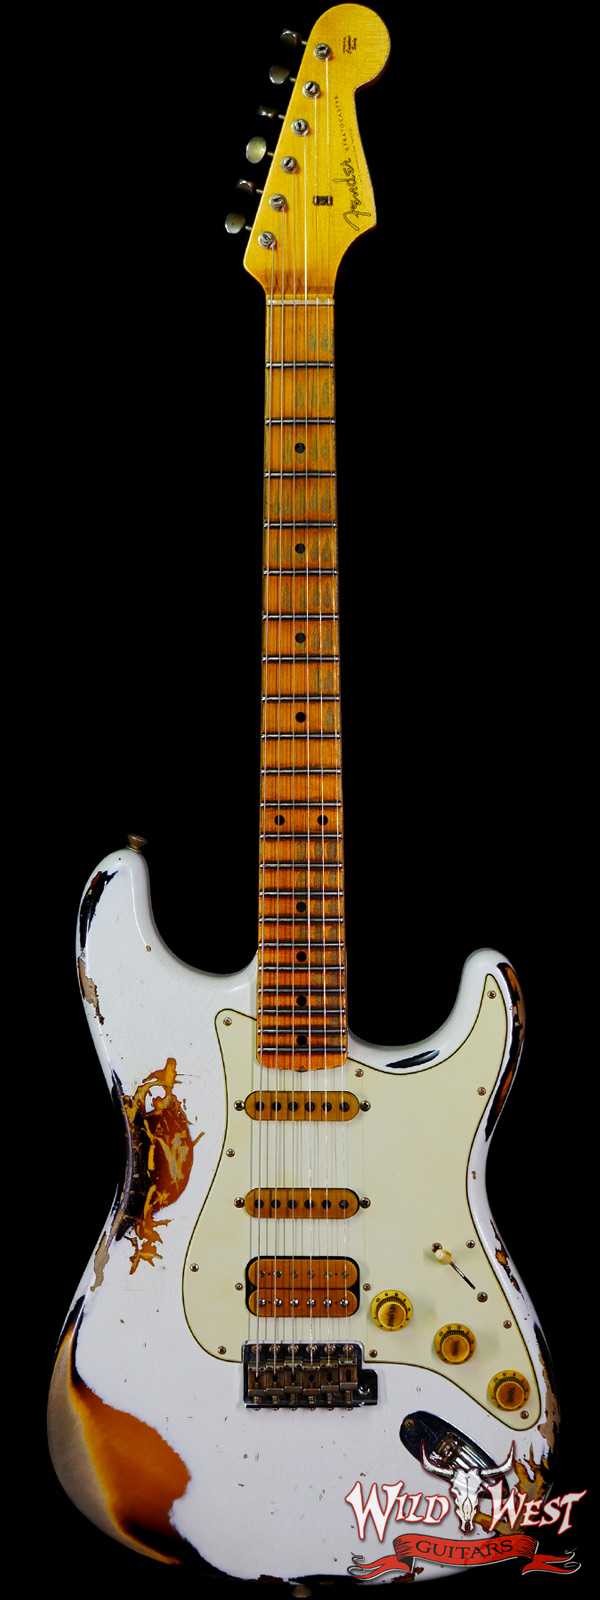 Fender Custom Shop Wild West White Lightning 2.0 Stratocaster HSS Maple Board 21 Frets Heavy Relic 2 Tone Sunburst